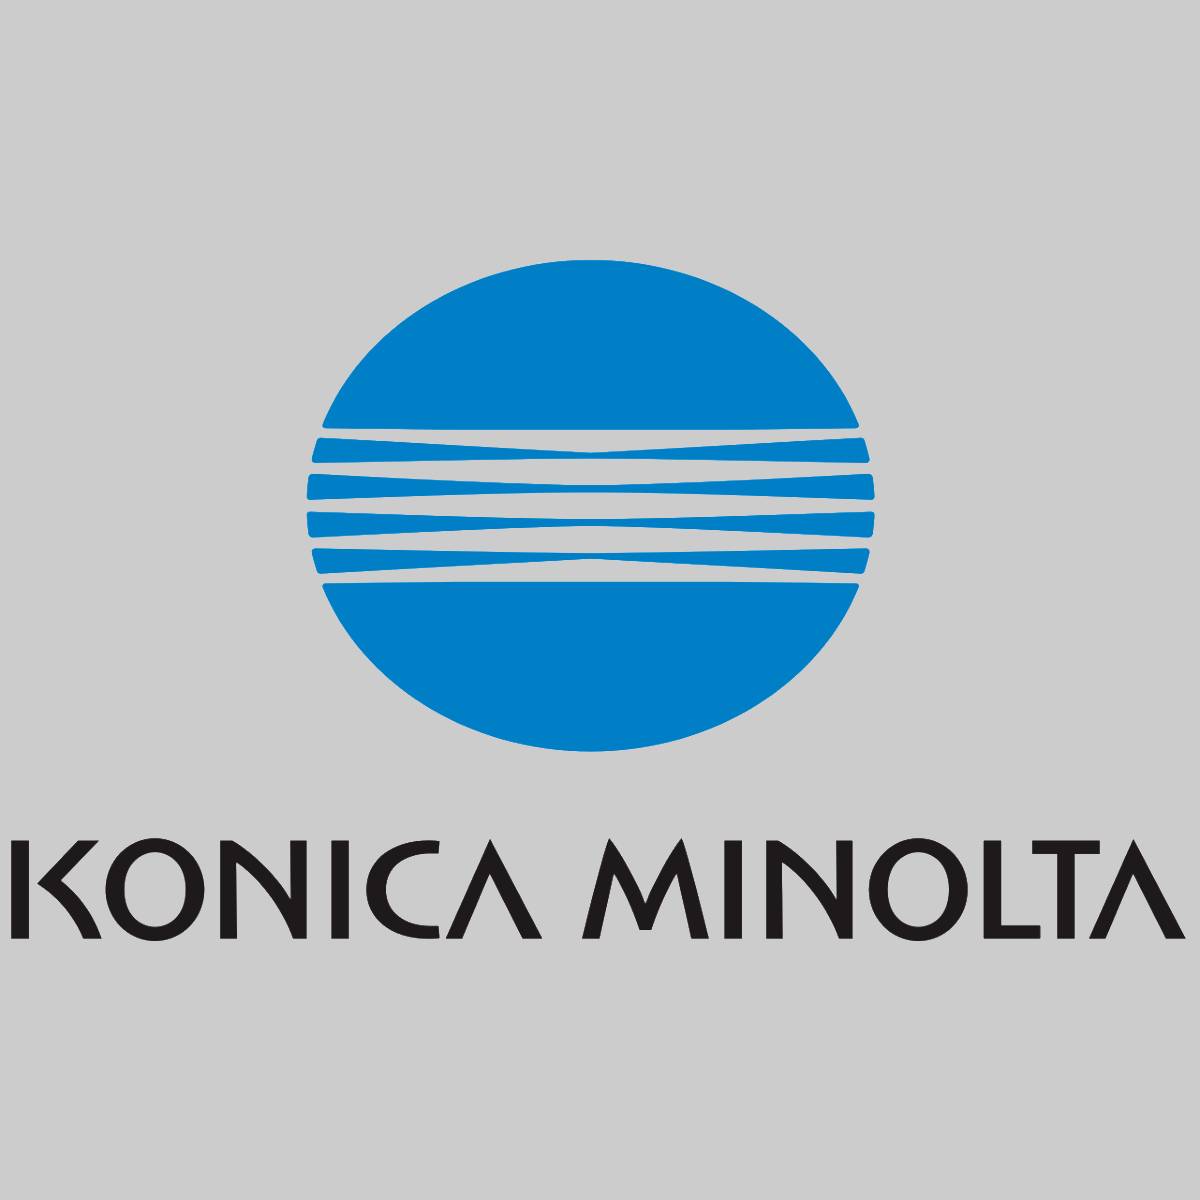 "Original Konica Minolta Black Toner A06V153 Magicolor 5500 5570 5600 5670 NEU